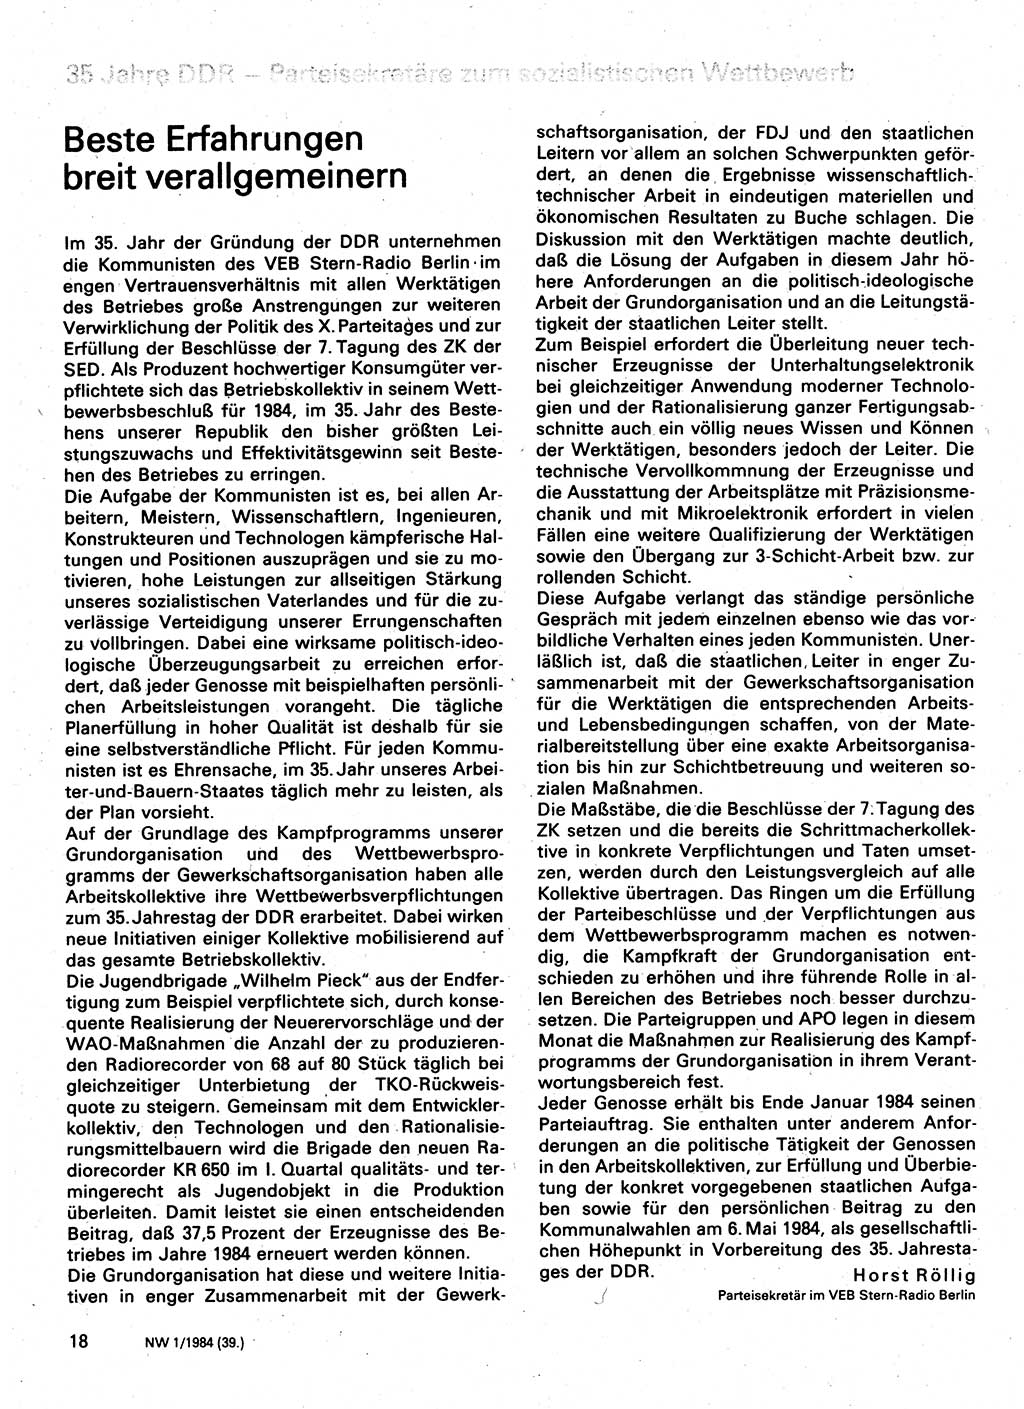 Neuer Weg (NW), Organ des Zentralkomitees (ZK) der SED (Sozialistische Einheitspartei Deutschlands) für Fragen des Parteilebens, 39. Jahrgang [Deutsche Demokratische Republik (DDR)] 1984, Seite 18 (NW ZK SED DDR 1984, S. 18)